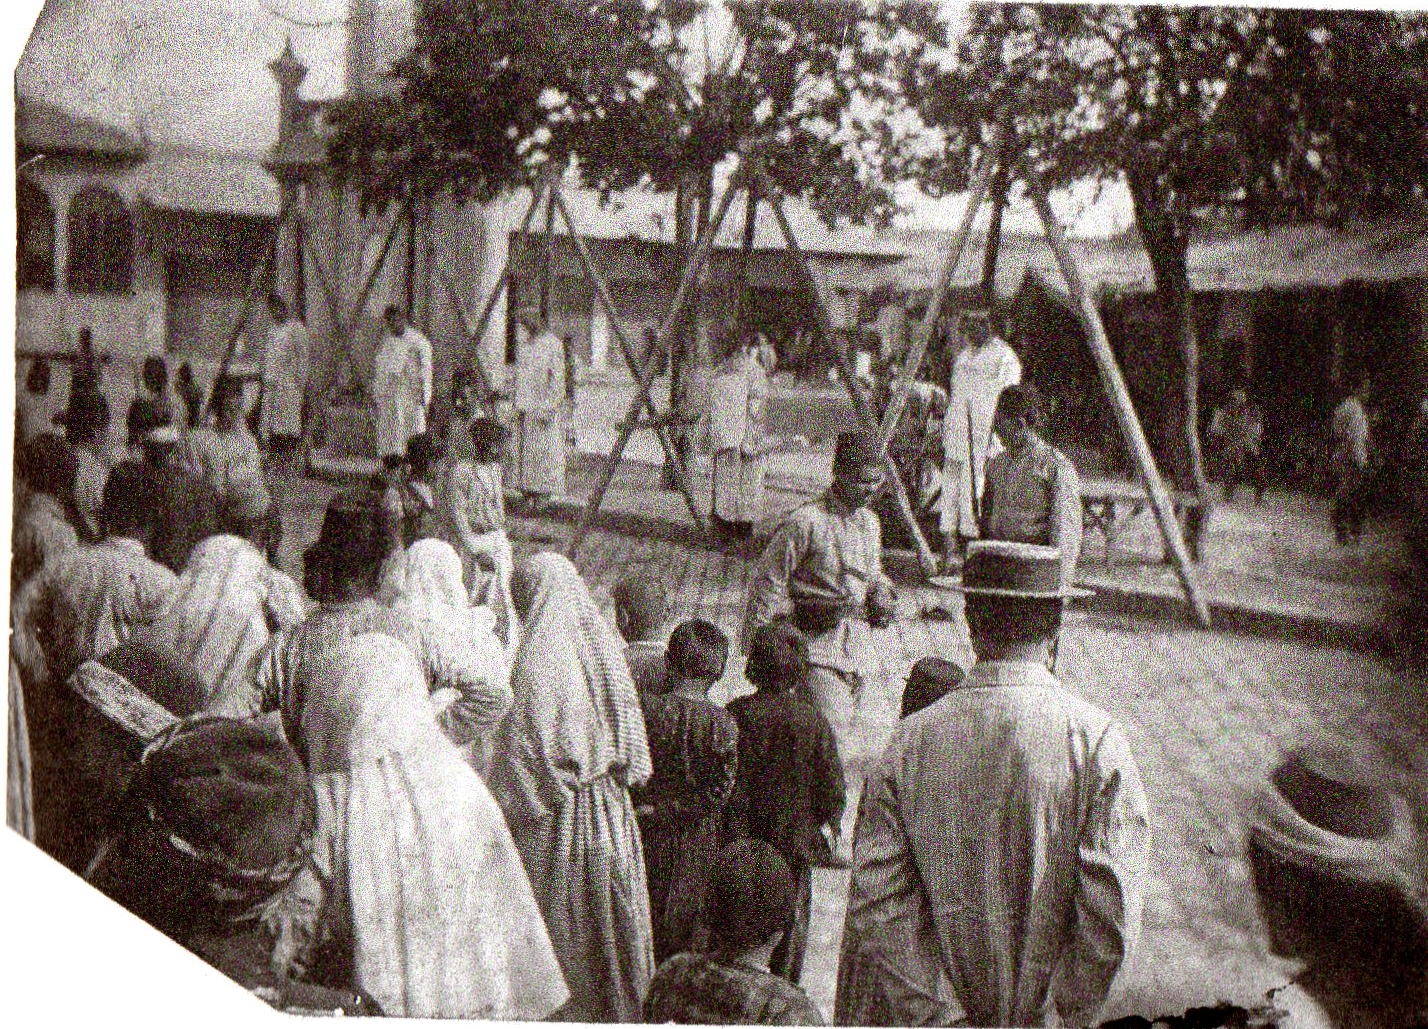 Adana_1909_Public Hanging